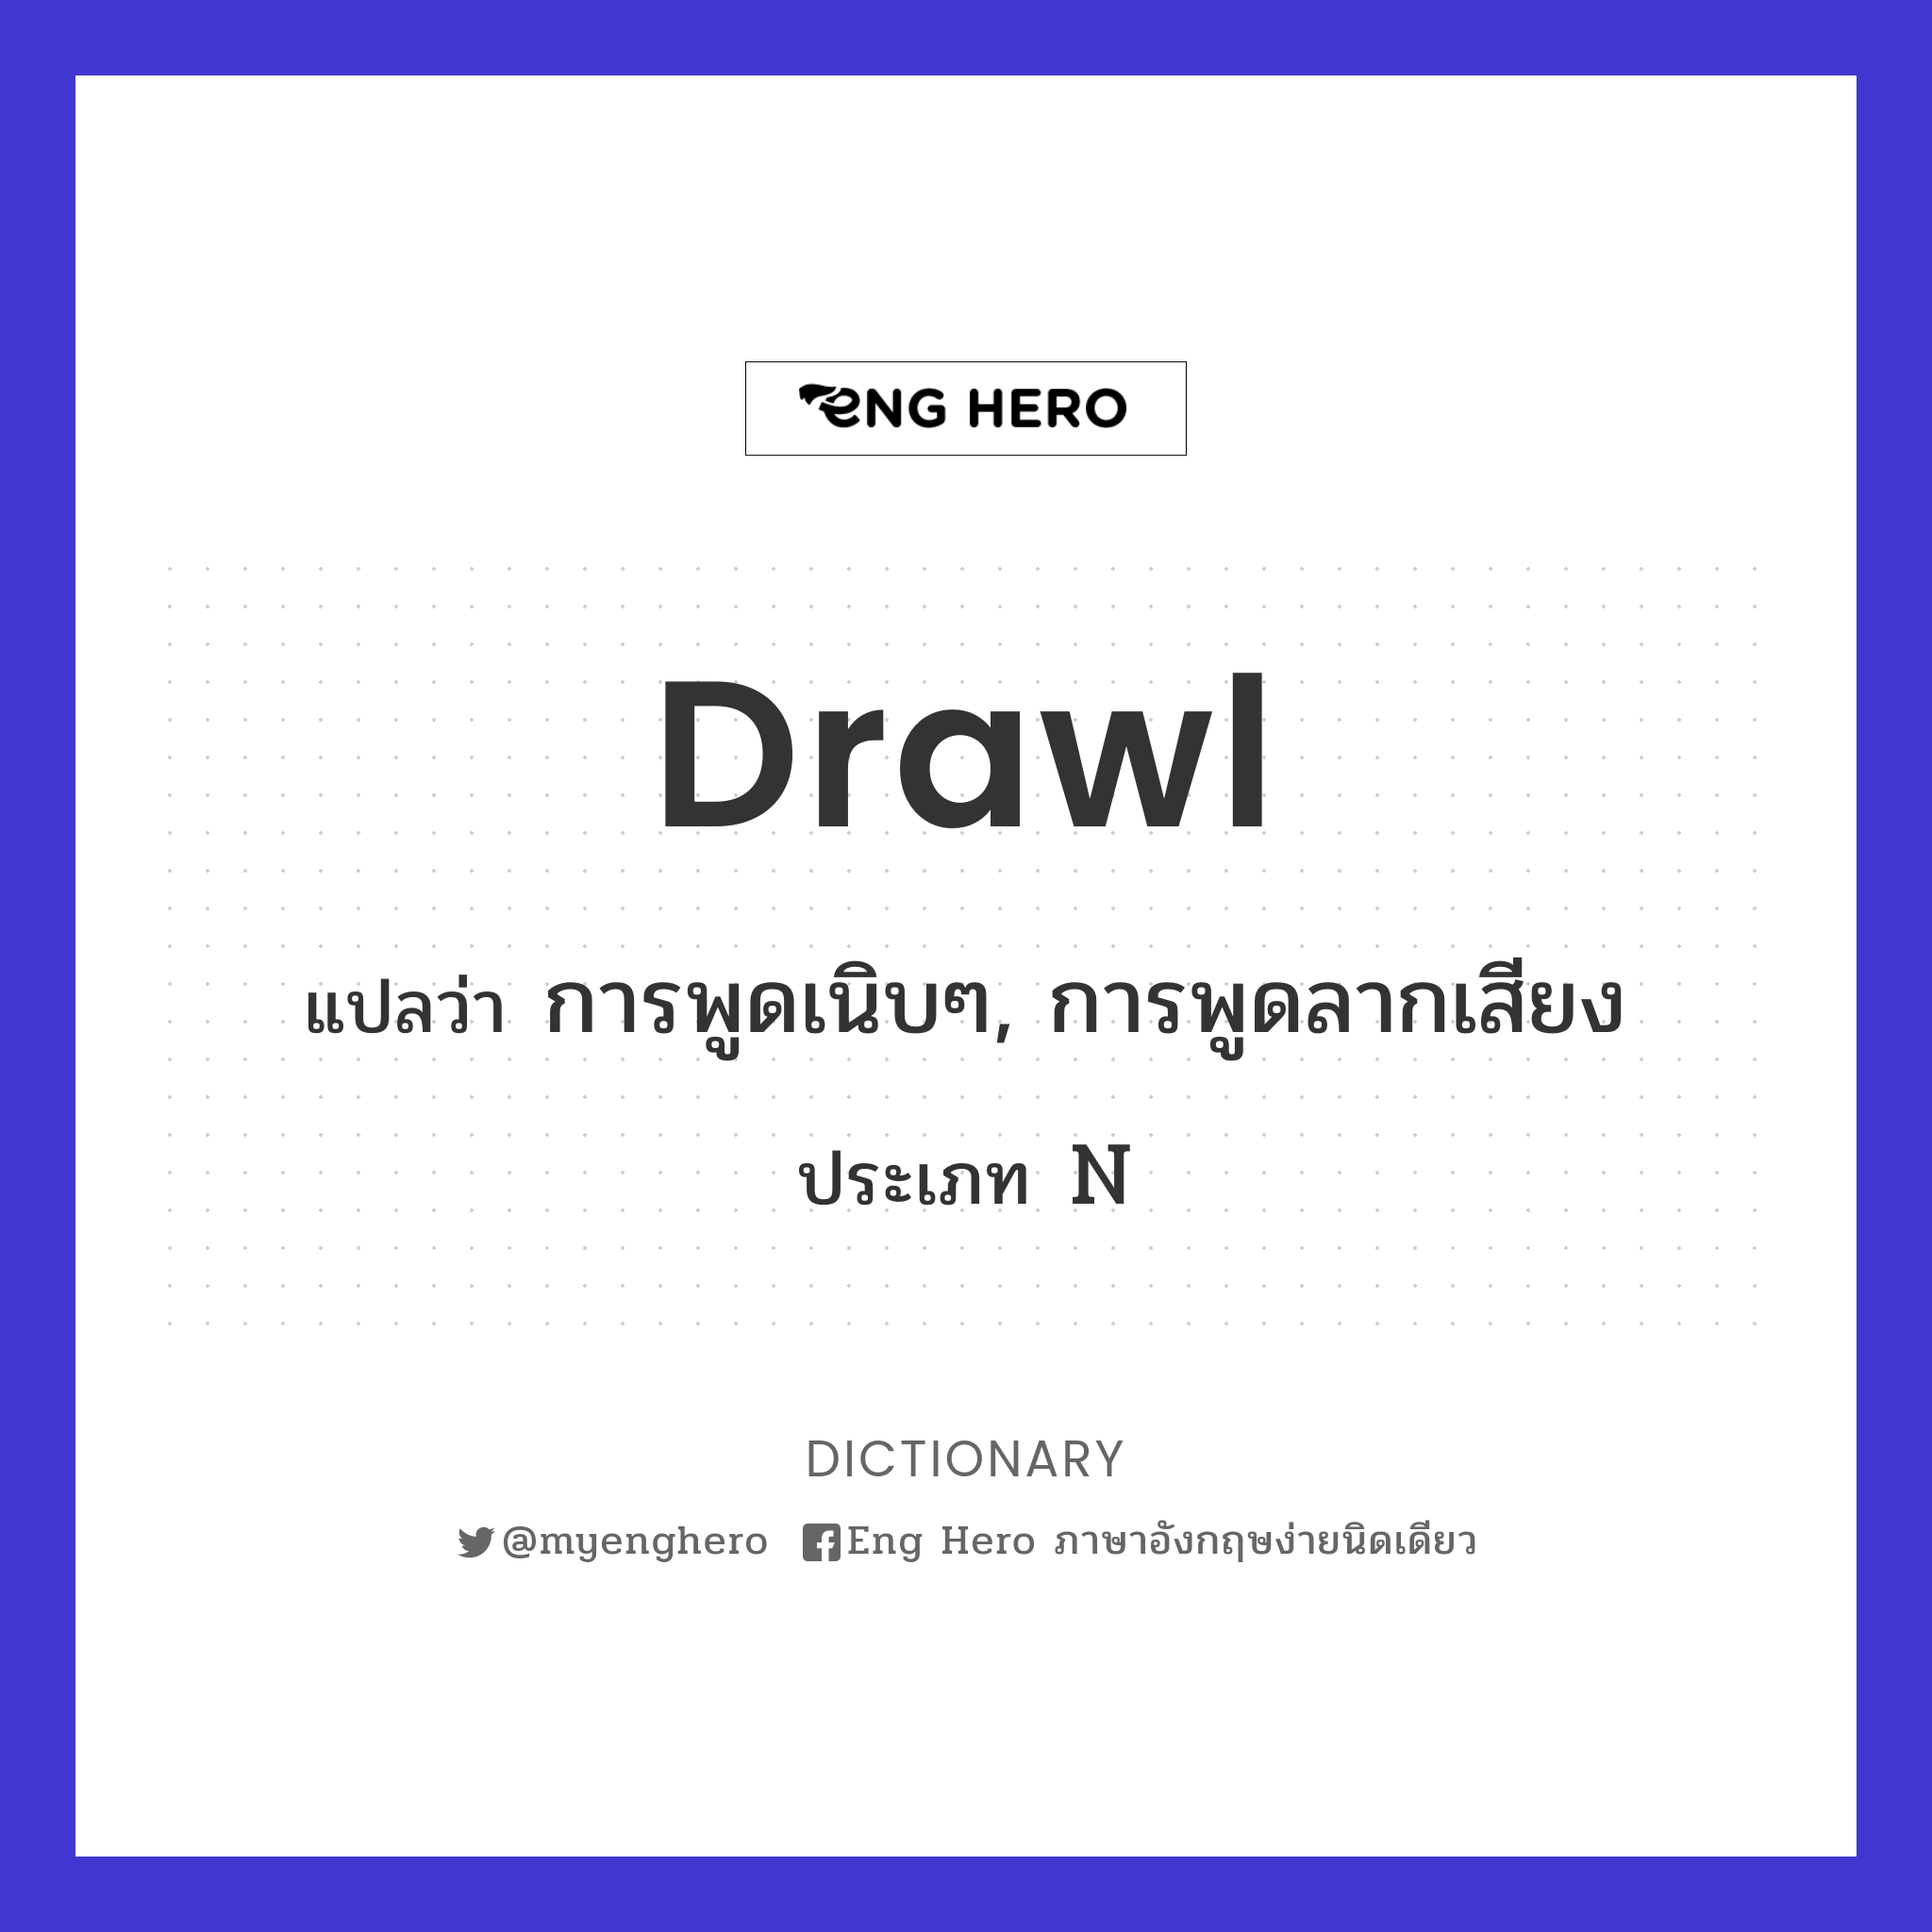 drawl